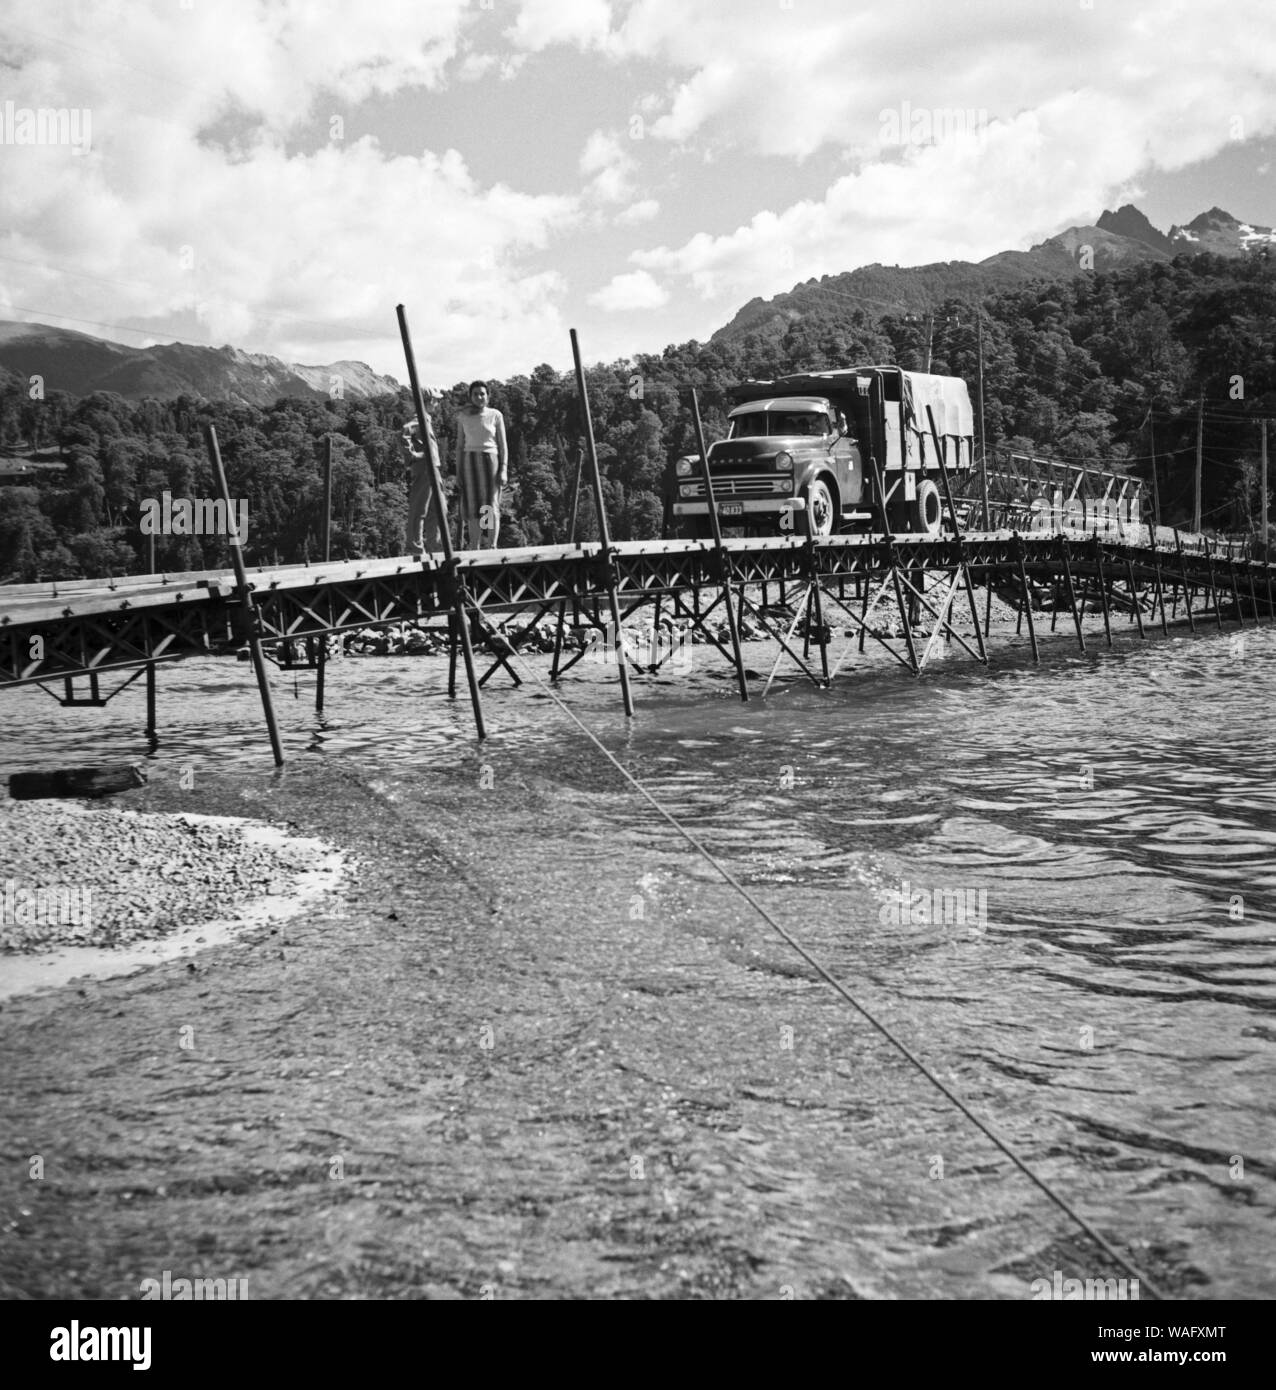 Ein Lastwagen auf einer Brücke über eine Furt des Lago Loloc nahe der Stadt Mendoza in Argentinien, 1957. A lorry crossing a bridge over Lago Loloc lake near the city of Mendoza, Argentina 1957. Stock Photo